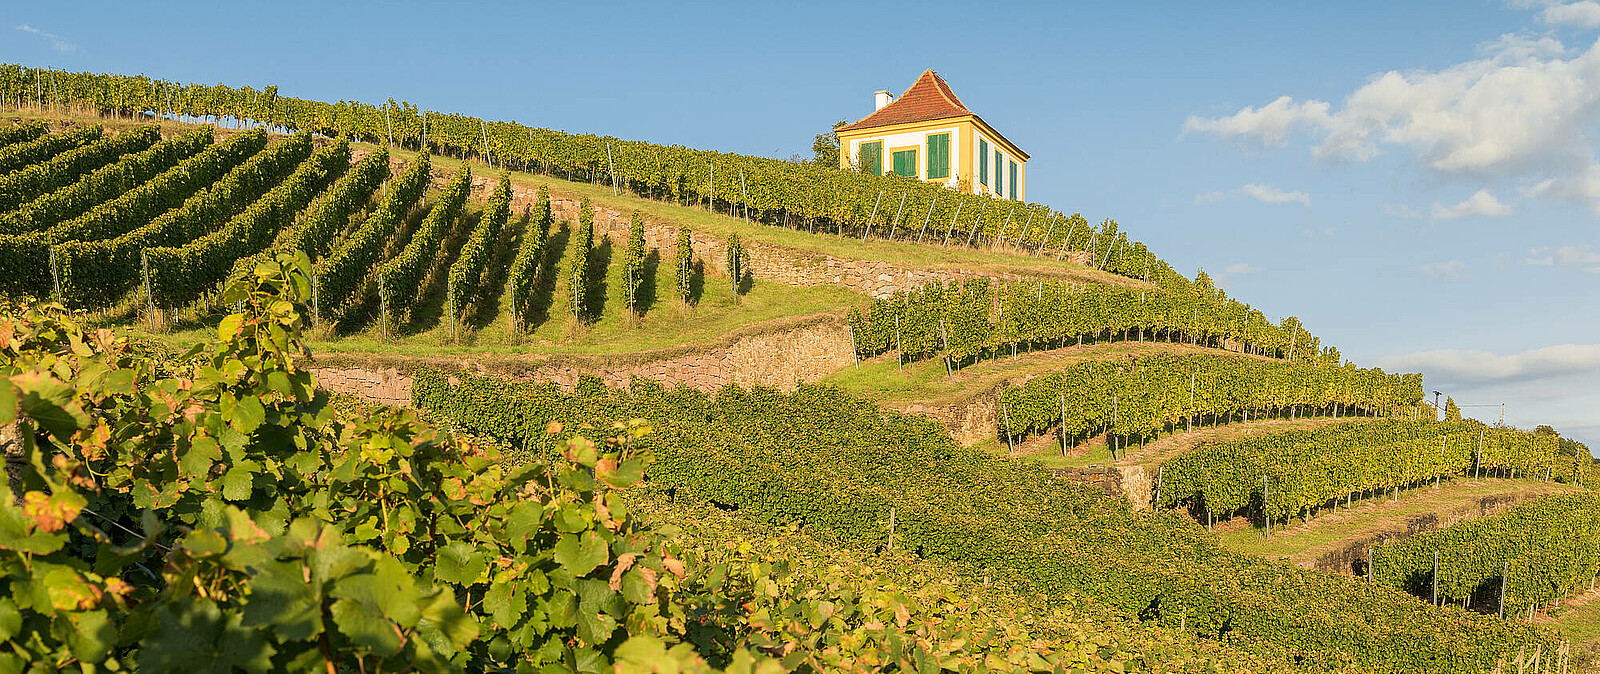 Erkunden Sie mit uns die Weinbauregion Diesbar-Seußlitz zunächst vom Schiff aus und später zu Fuß. Immer begleitet und moderiert von unserer kompetenten lizenzierten Reiseleitung und mit interessanten & wissenswerten Hintergrundinformationen.